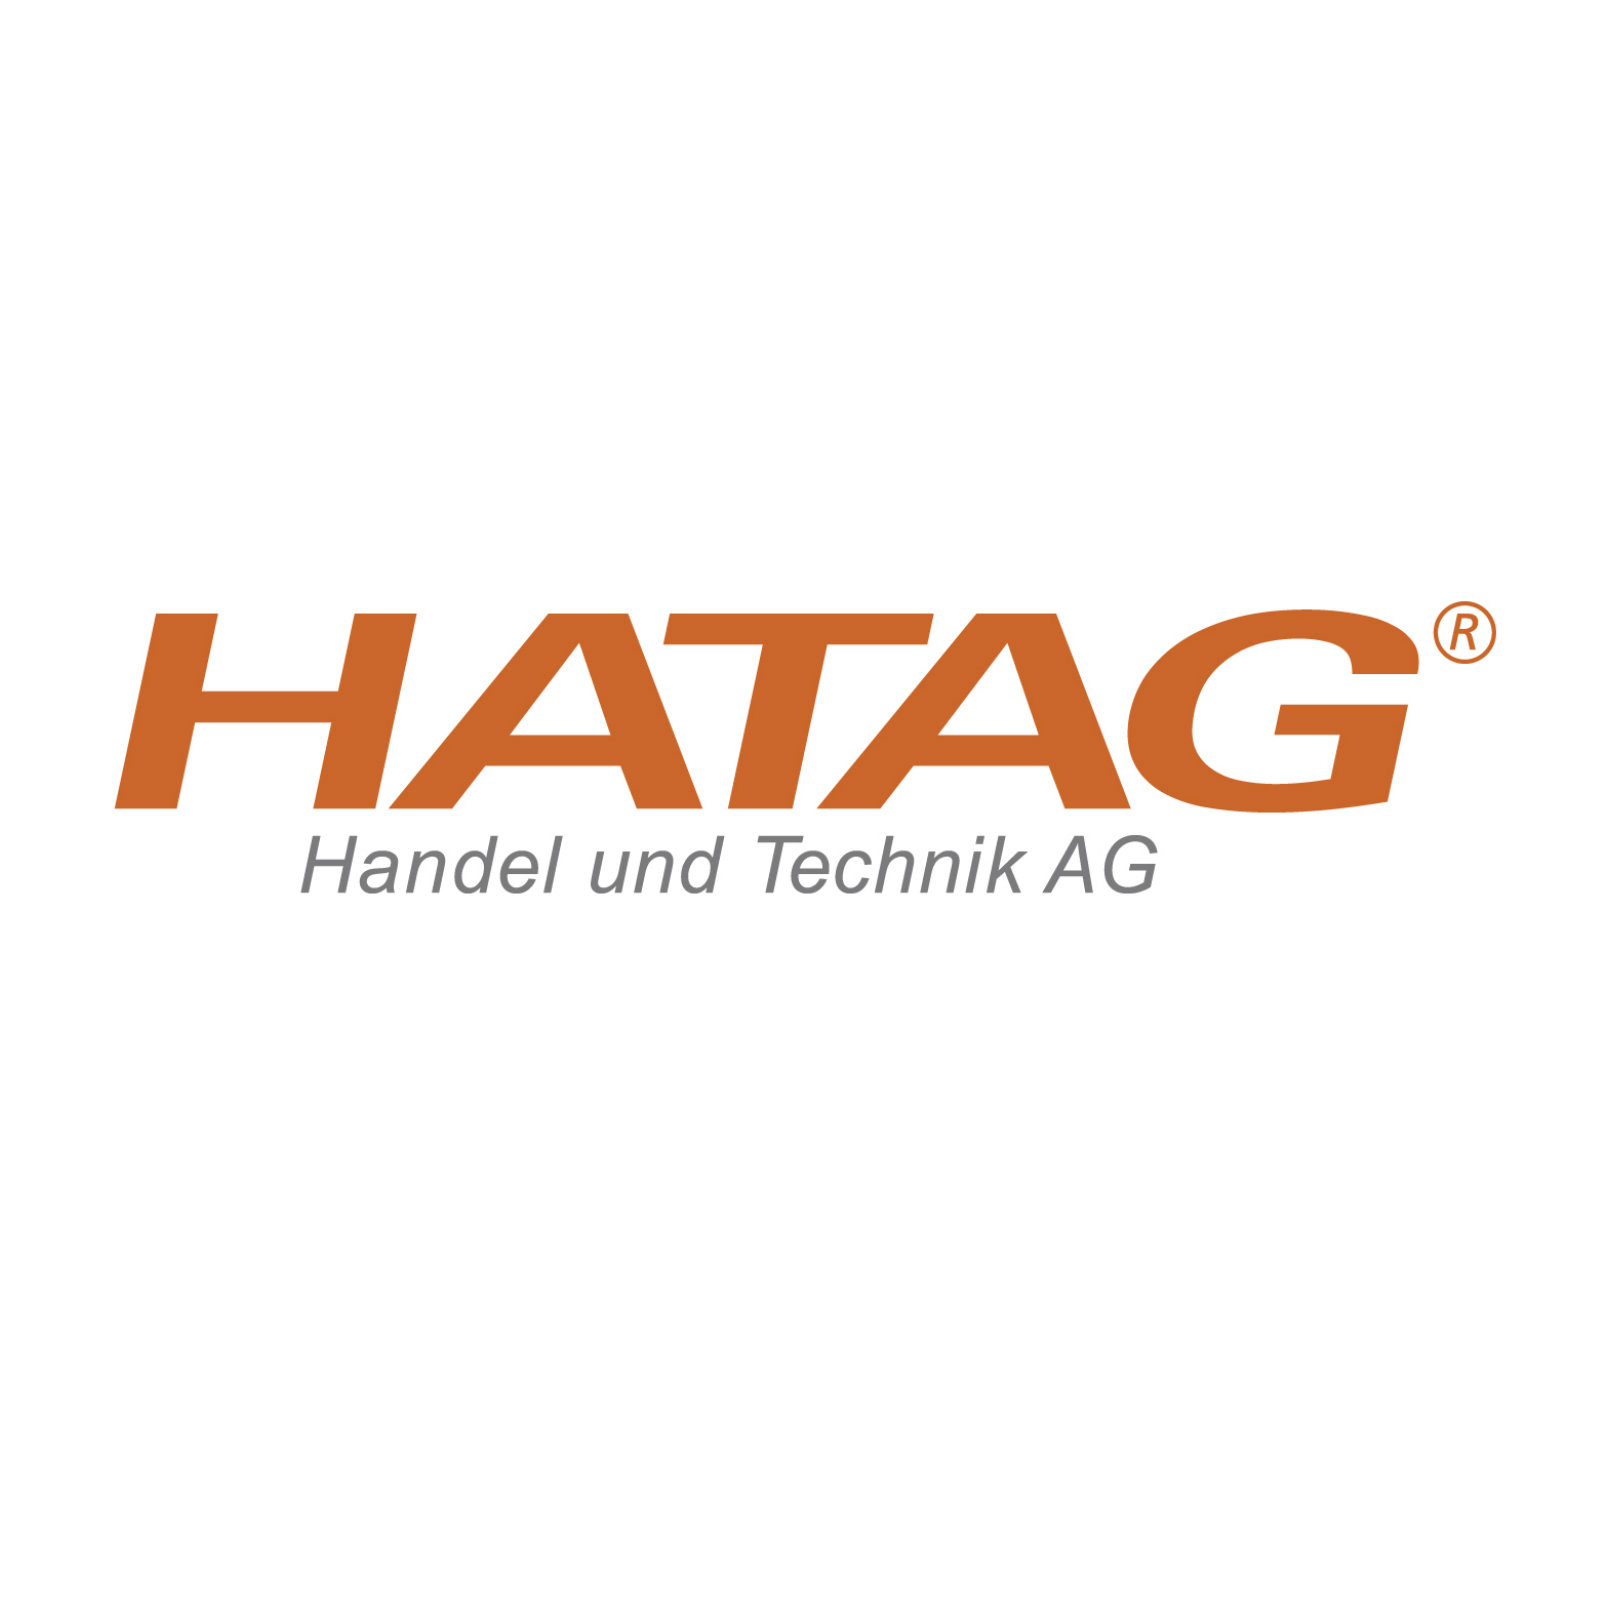 Schweiz / HATAG Handel und Technik AG